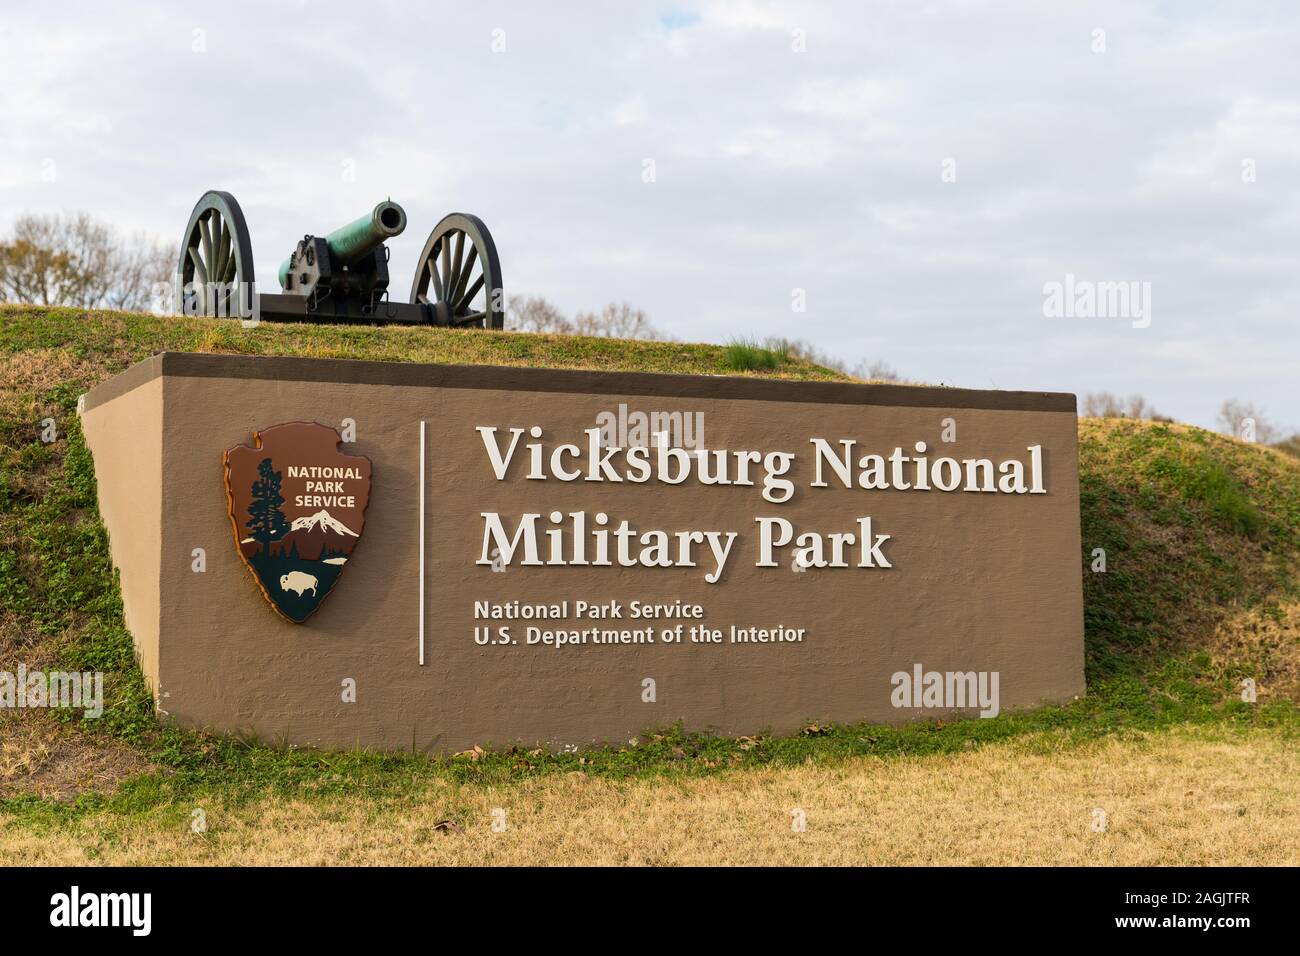 Vicksburg National Military Park Entrance Sign Banque D'Images